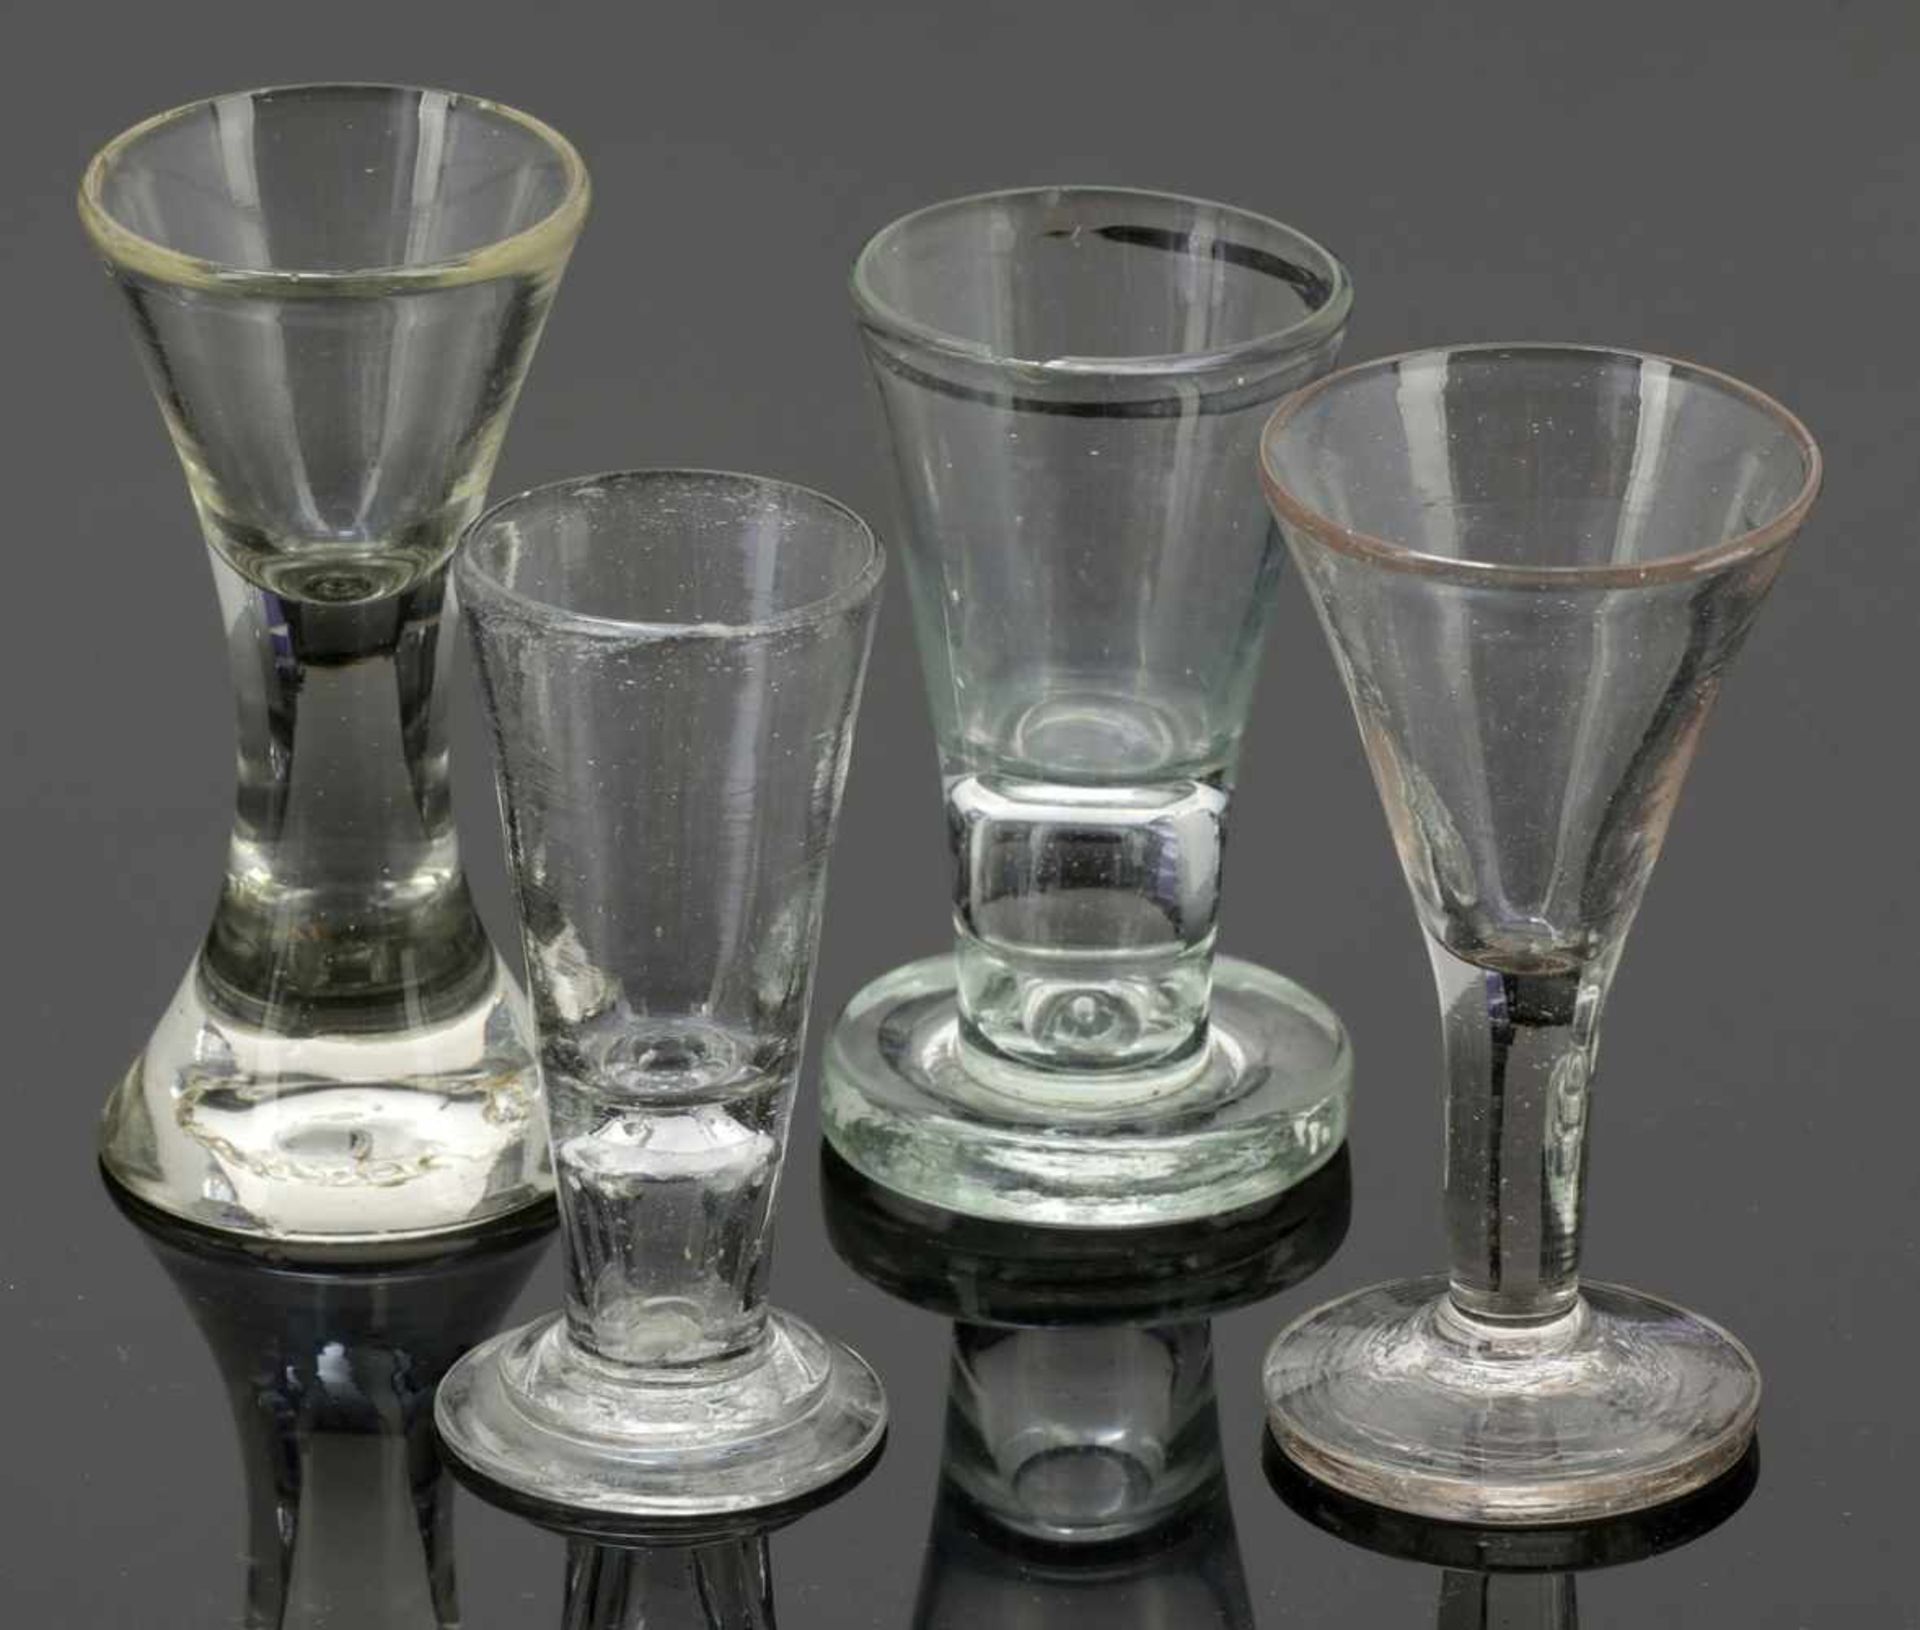 4 SchnapsgläserNorddeutsch, Ende 18. Jh. / 1. Hälfte 19. Jh. Farbloses Glas. 3 Gläser mit Abriss, - Image 2 of 3